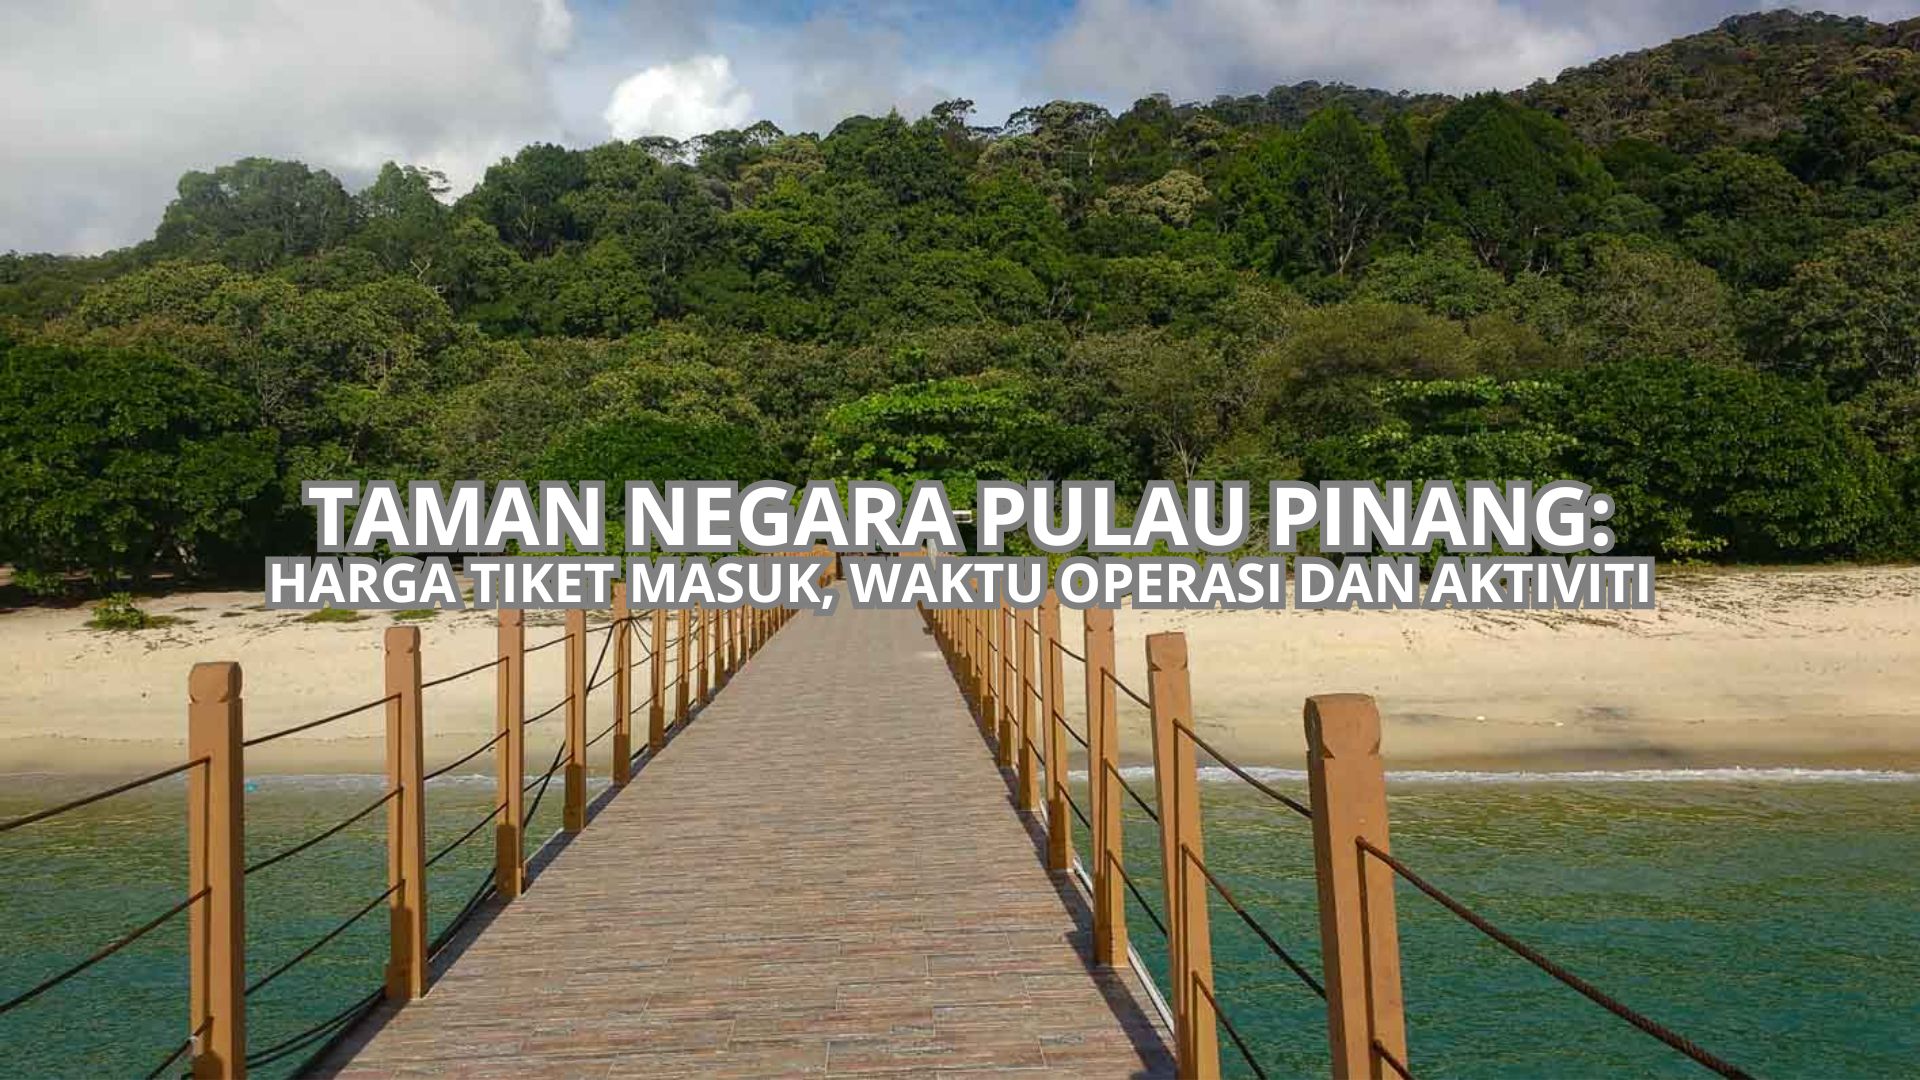 Taman Negara Pulau Pinang Cover